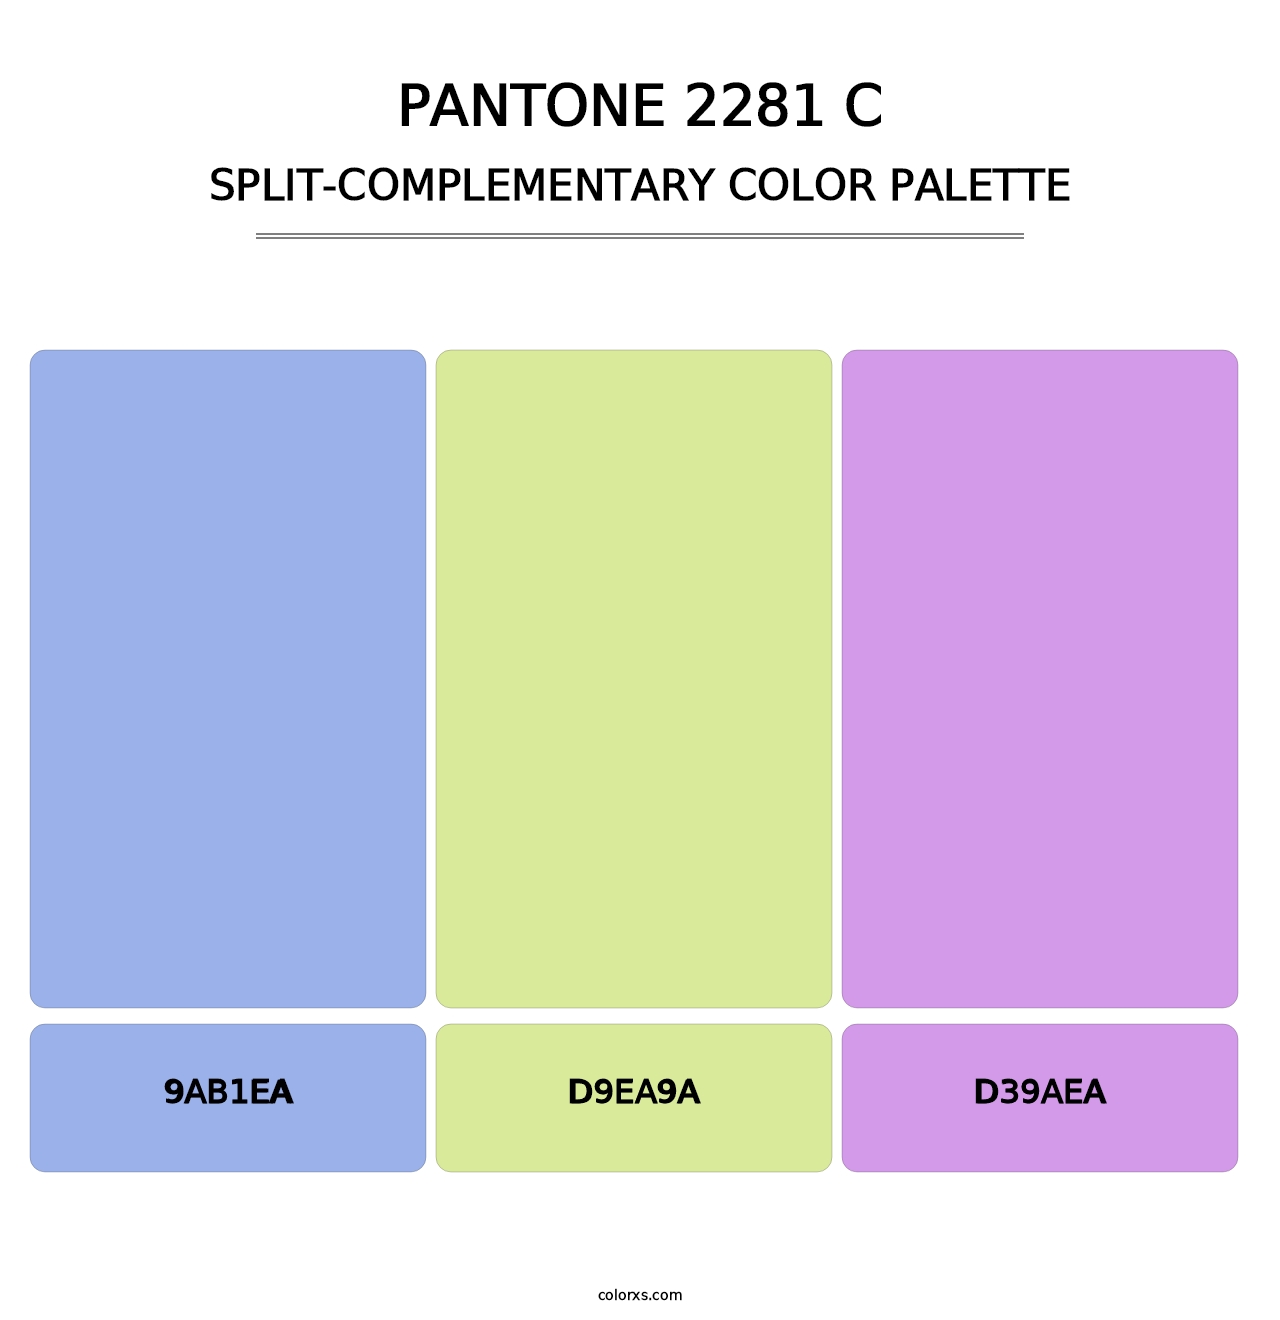 PANTONE 2281 C - Split-Complementary Color Palette